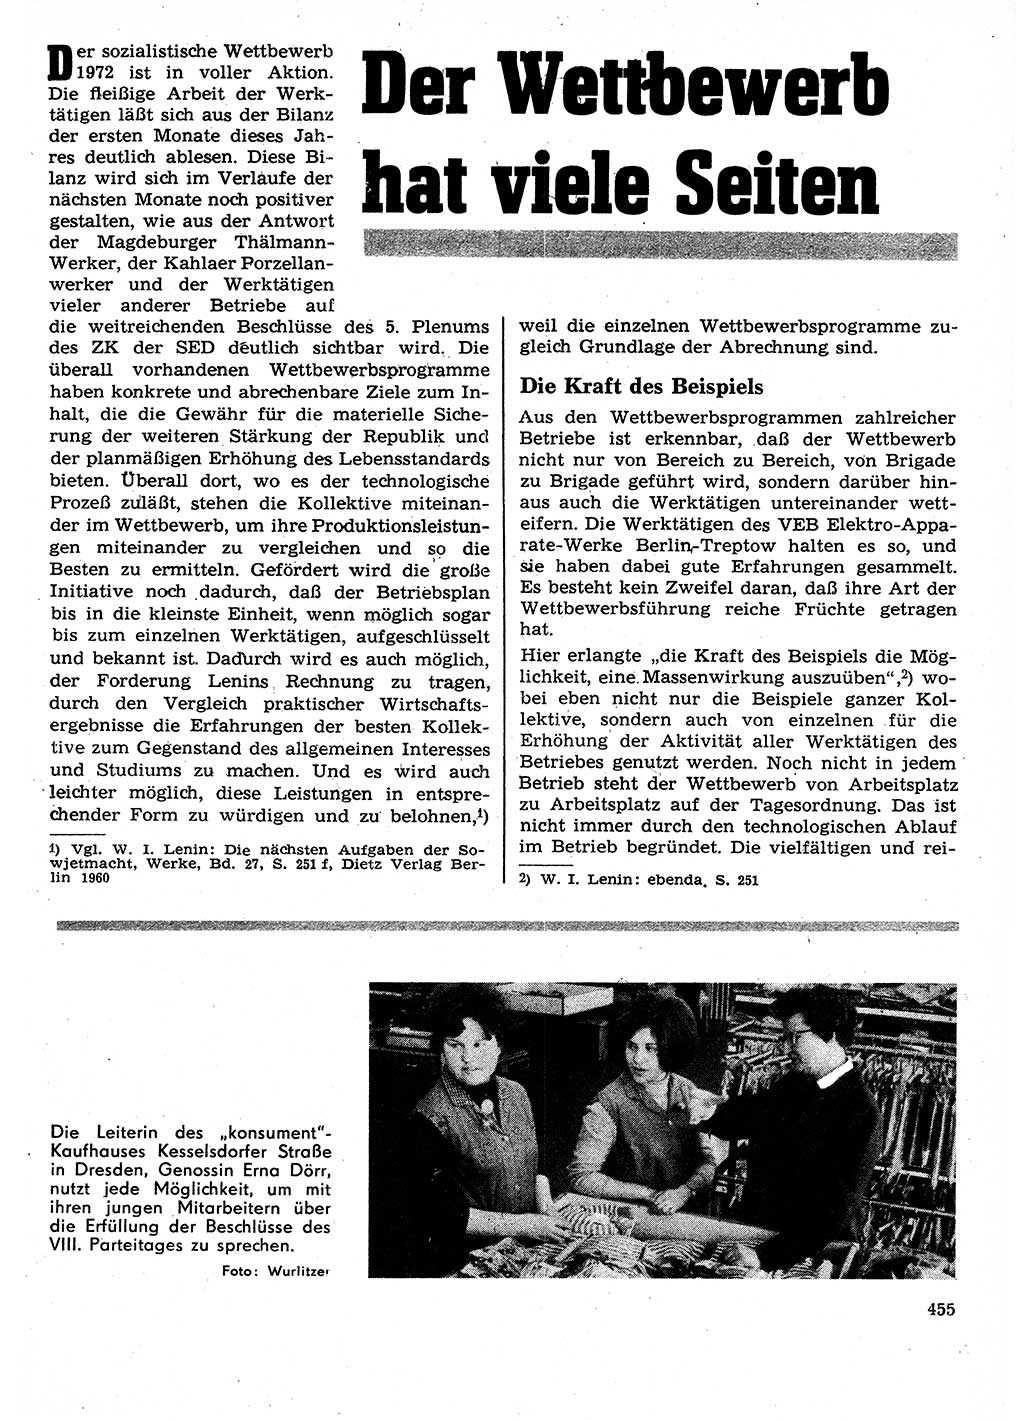 Neuer Weg (NW), Organ des Zentralkomitees (ZK) der SED (Sozialistische Einheitspartei Deutschlands) für Fragen des Parteilebens, 27. Jahrgang [Deutsche Demokratische Republik (DDR)] 1972, Seite 455 (NW ZK SED DDR 1972, S. 455)